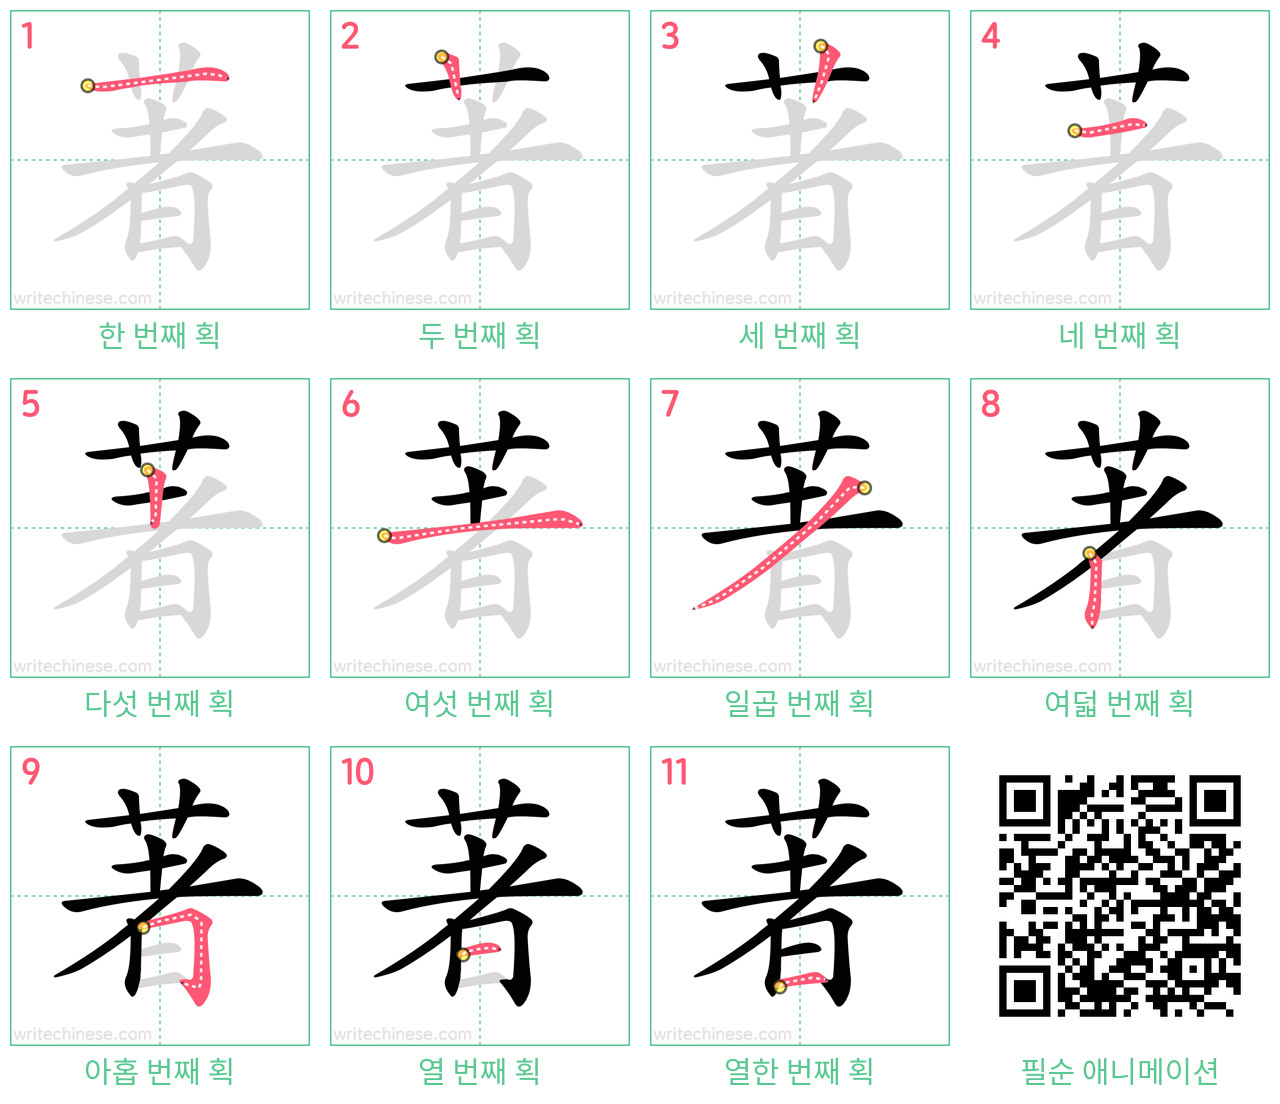 著 step-by-step stroke order diagrams